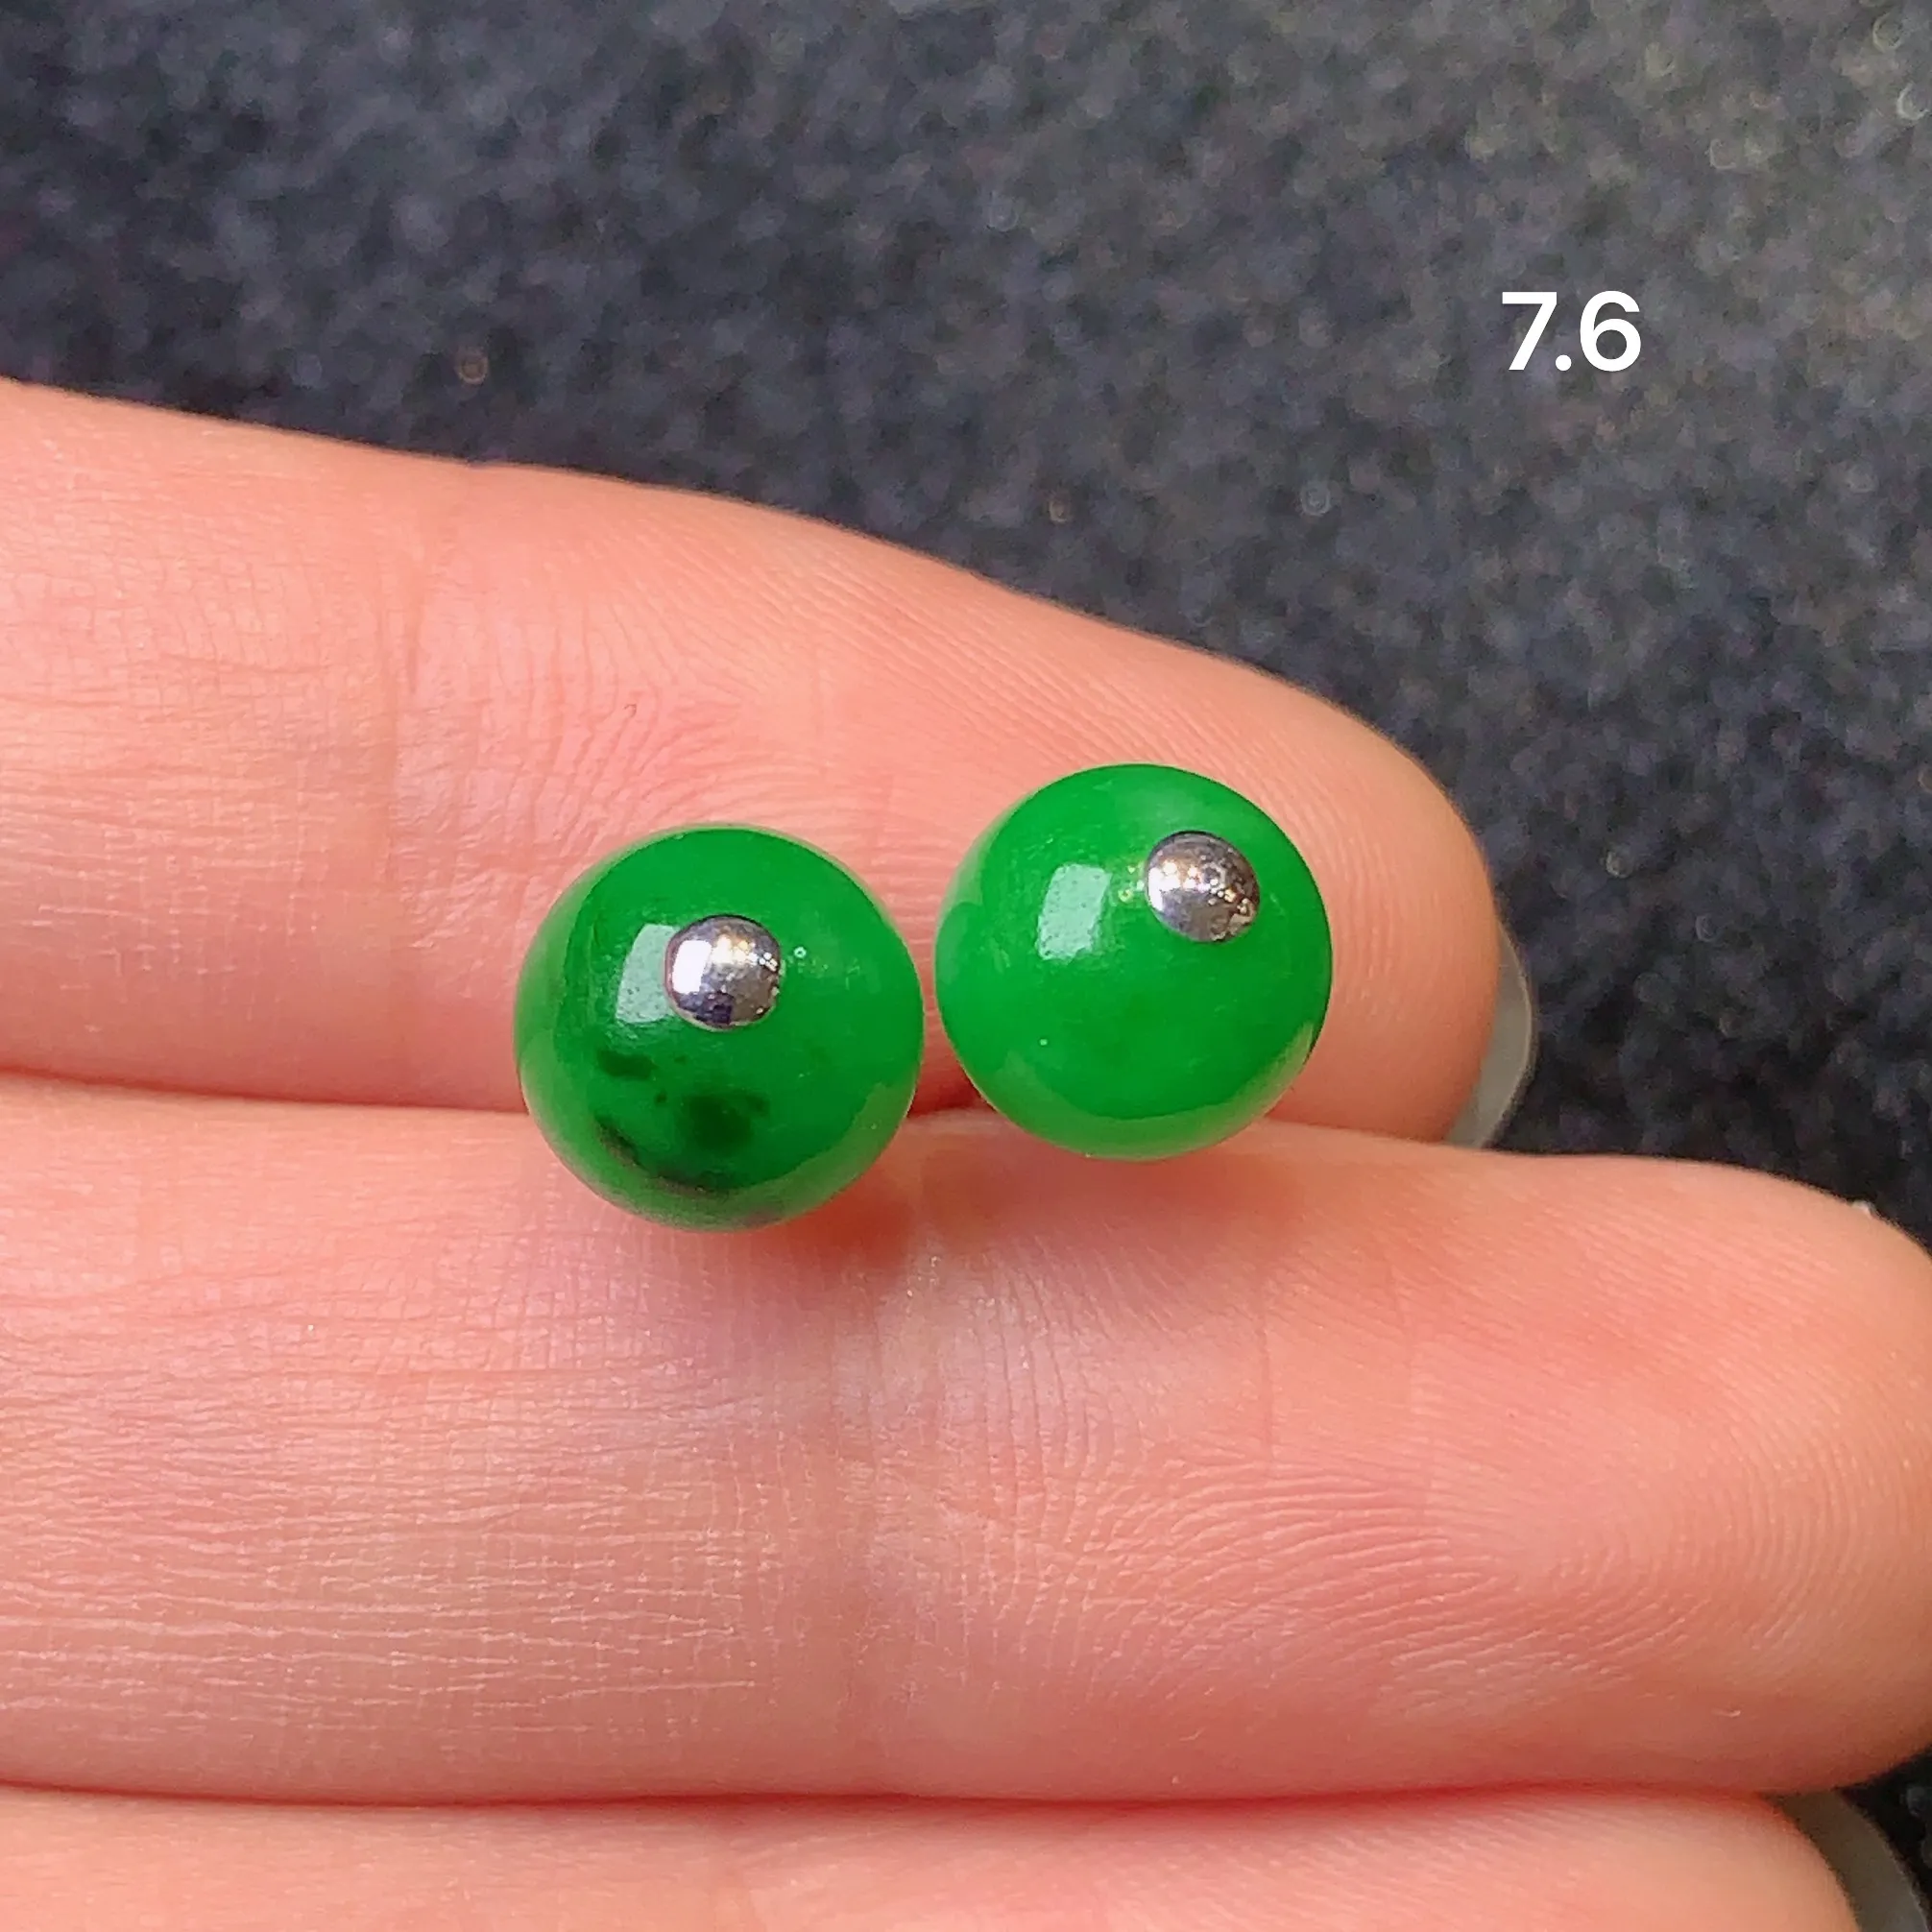 18k金镶嵌满绿圆珠耳钉 玉质水润细腻 色泽艳丽 款式时尚精美 亮眼 整体尺寸7.6